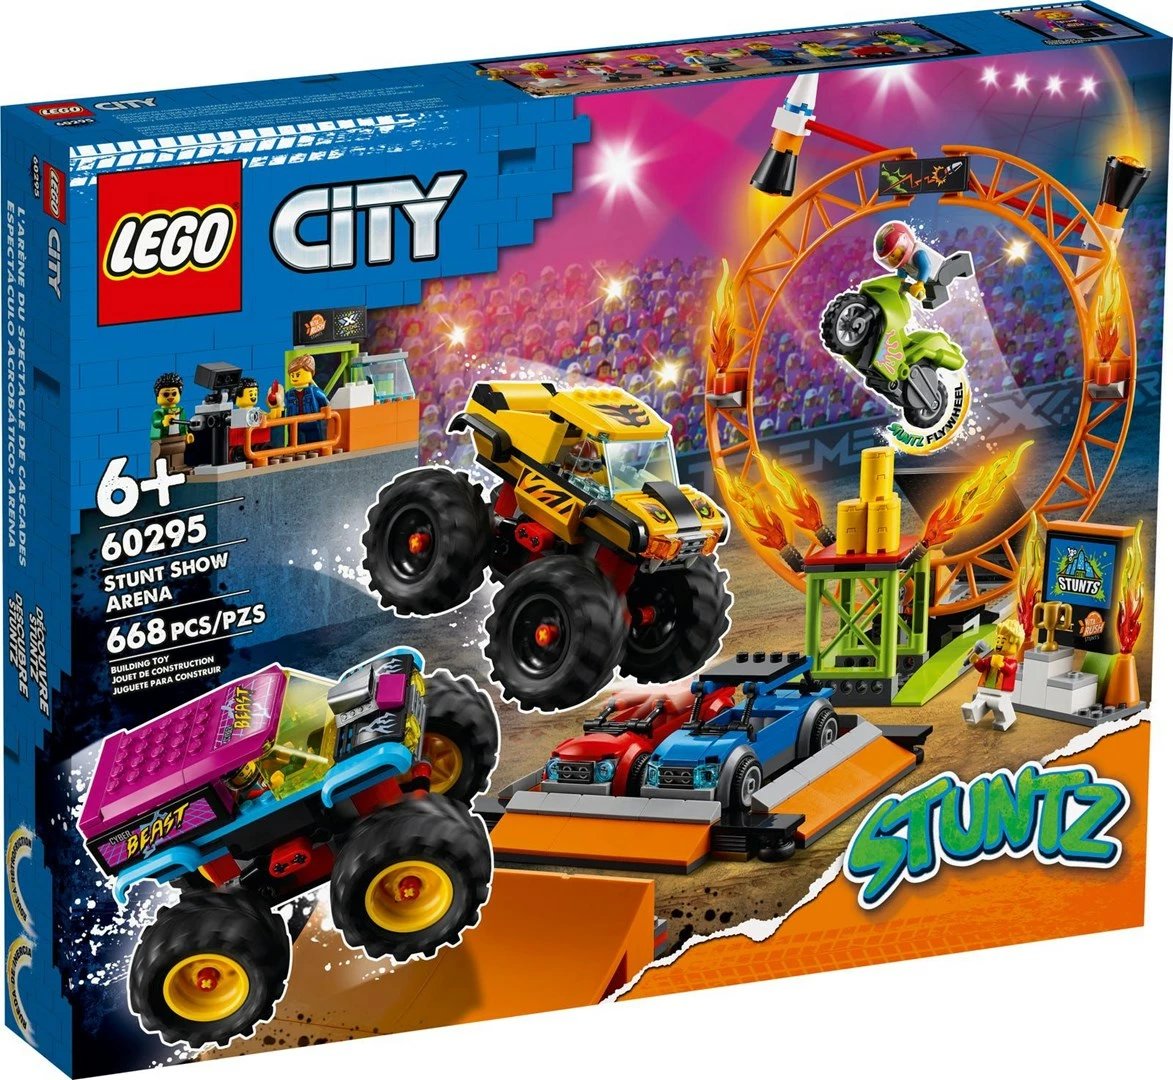 Lodër për fëmijë LEGO City 60295, Stunt Show Arena